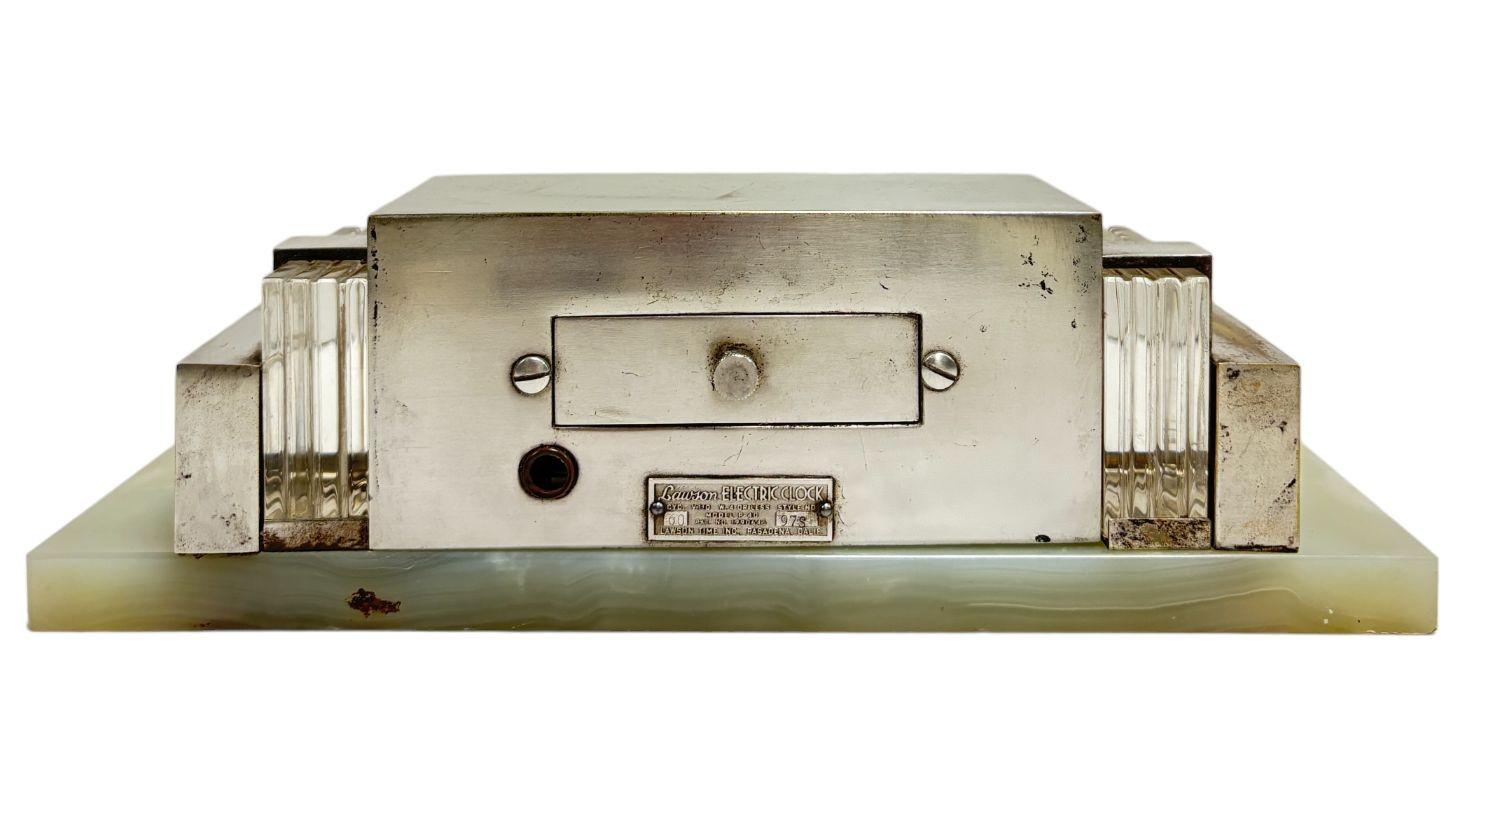 Une horloge électrique digitale cyclomètre modèle 975 du début des années 1930, logée dans un magnifique boîtier architectural en argent avec des accents art déco chromés en escalier et une base en marbre.

Voici l'horloge de table Lawson - un